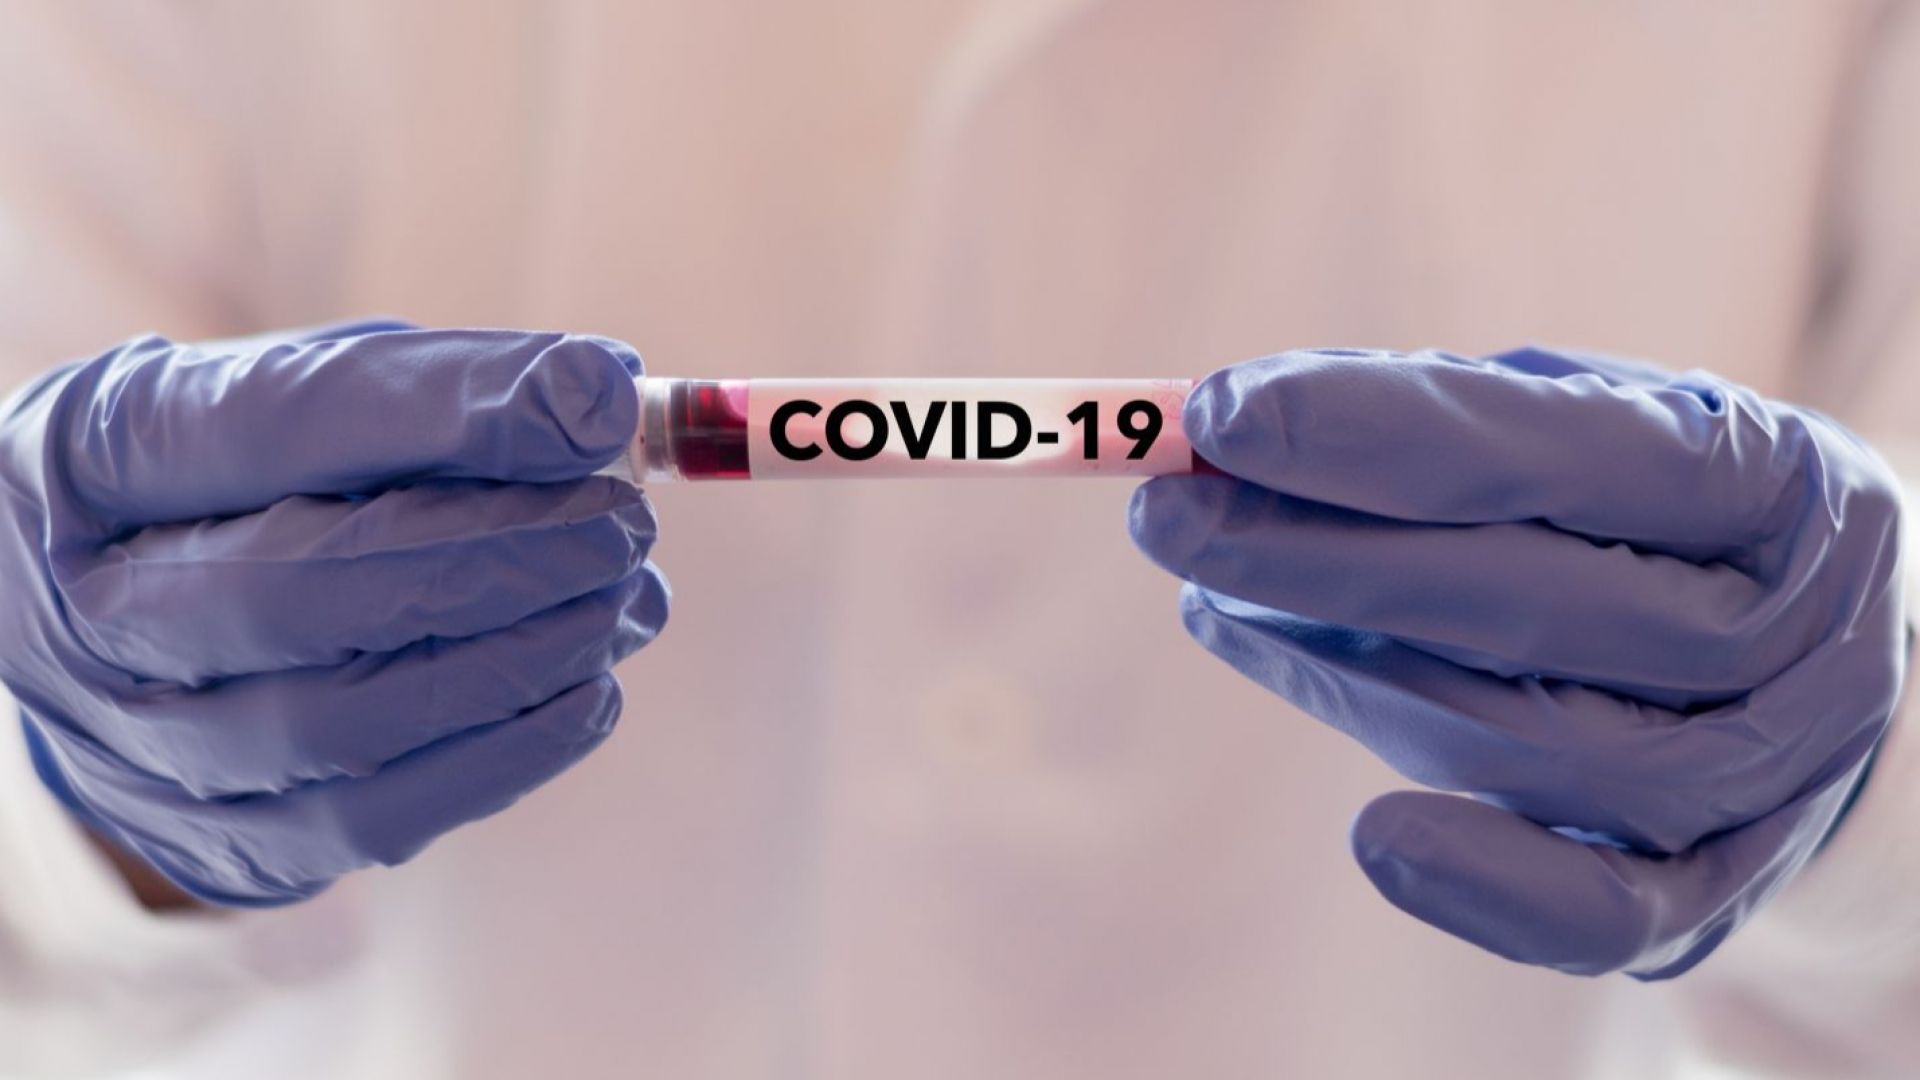 "Галъп": 56% от българите смятат COVID-19 за просто един силен грип